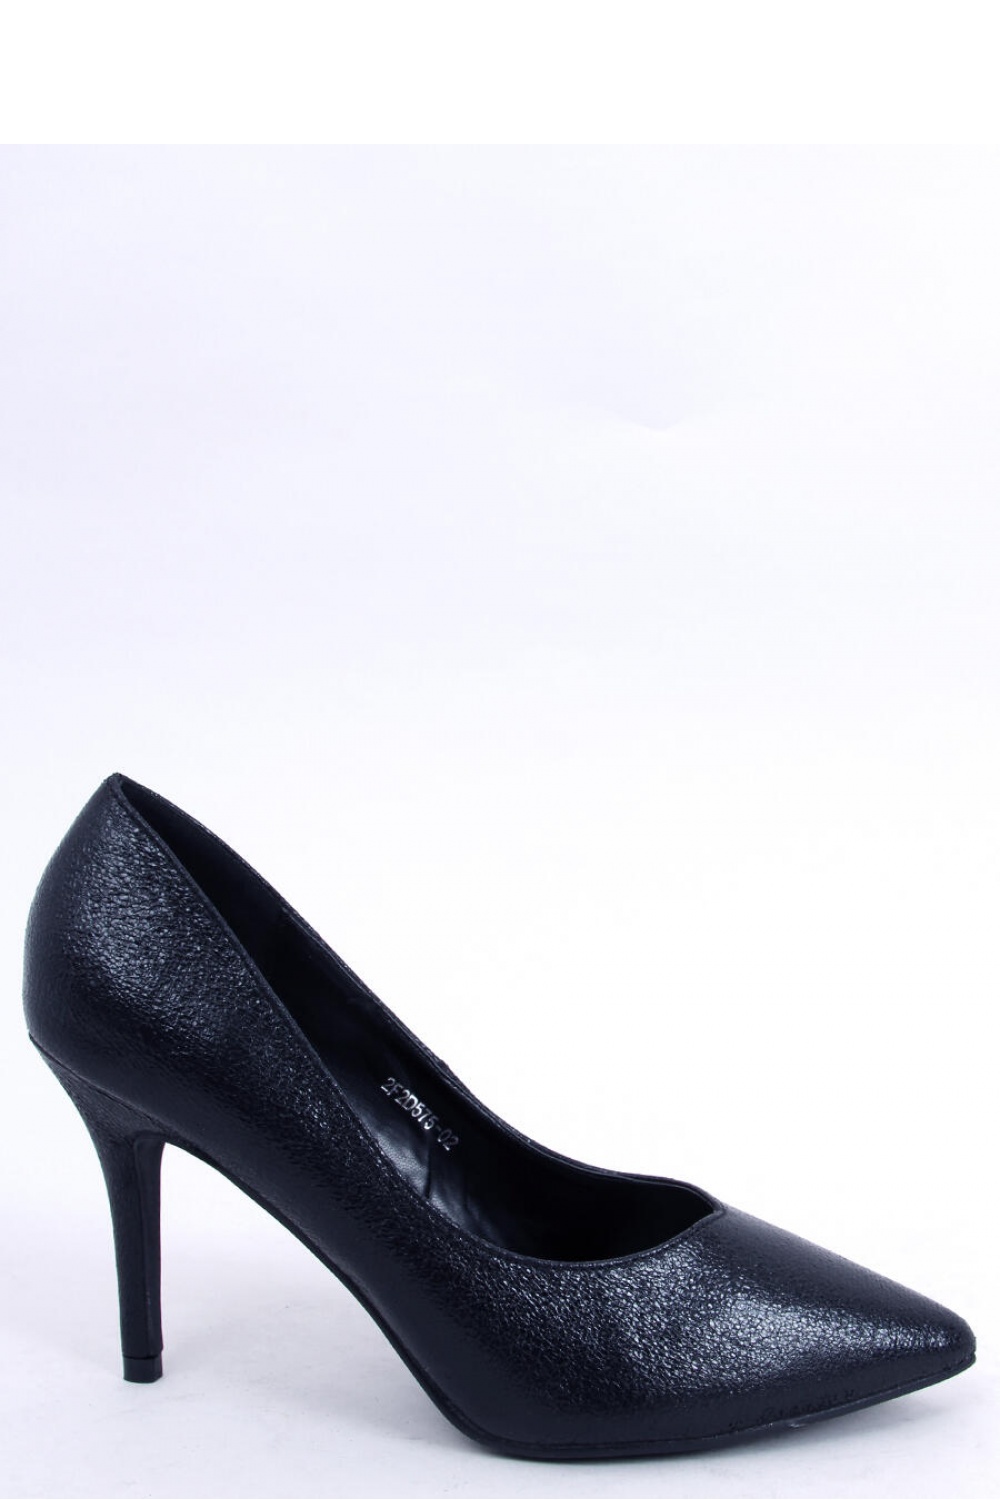 High heels model 173570 Inello